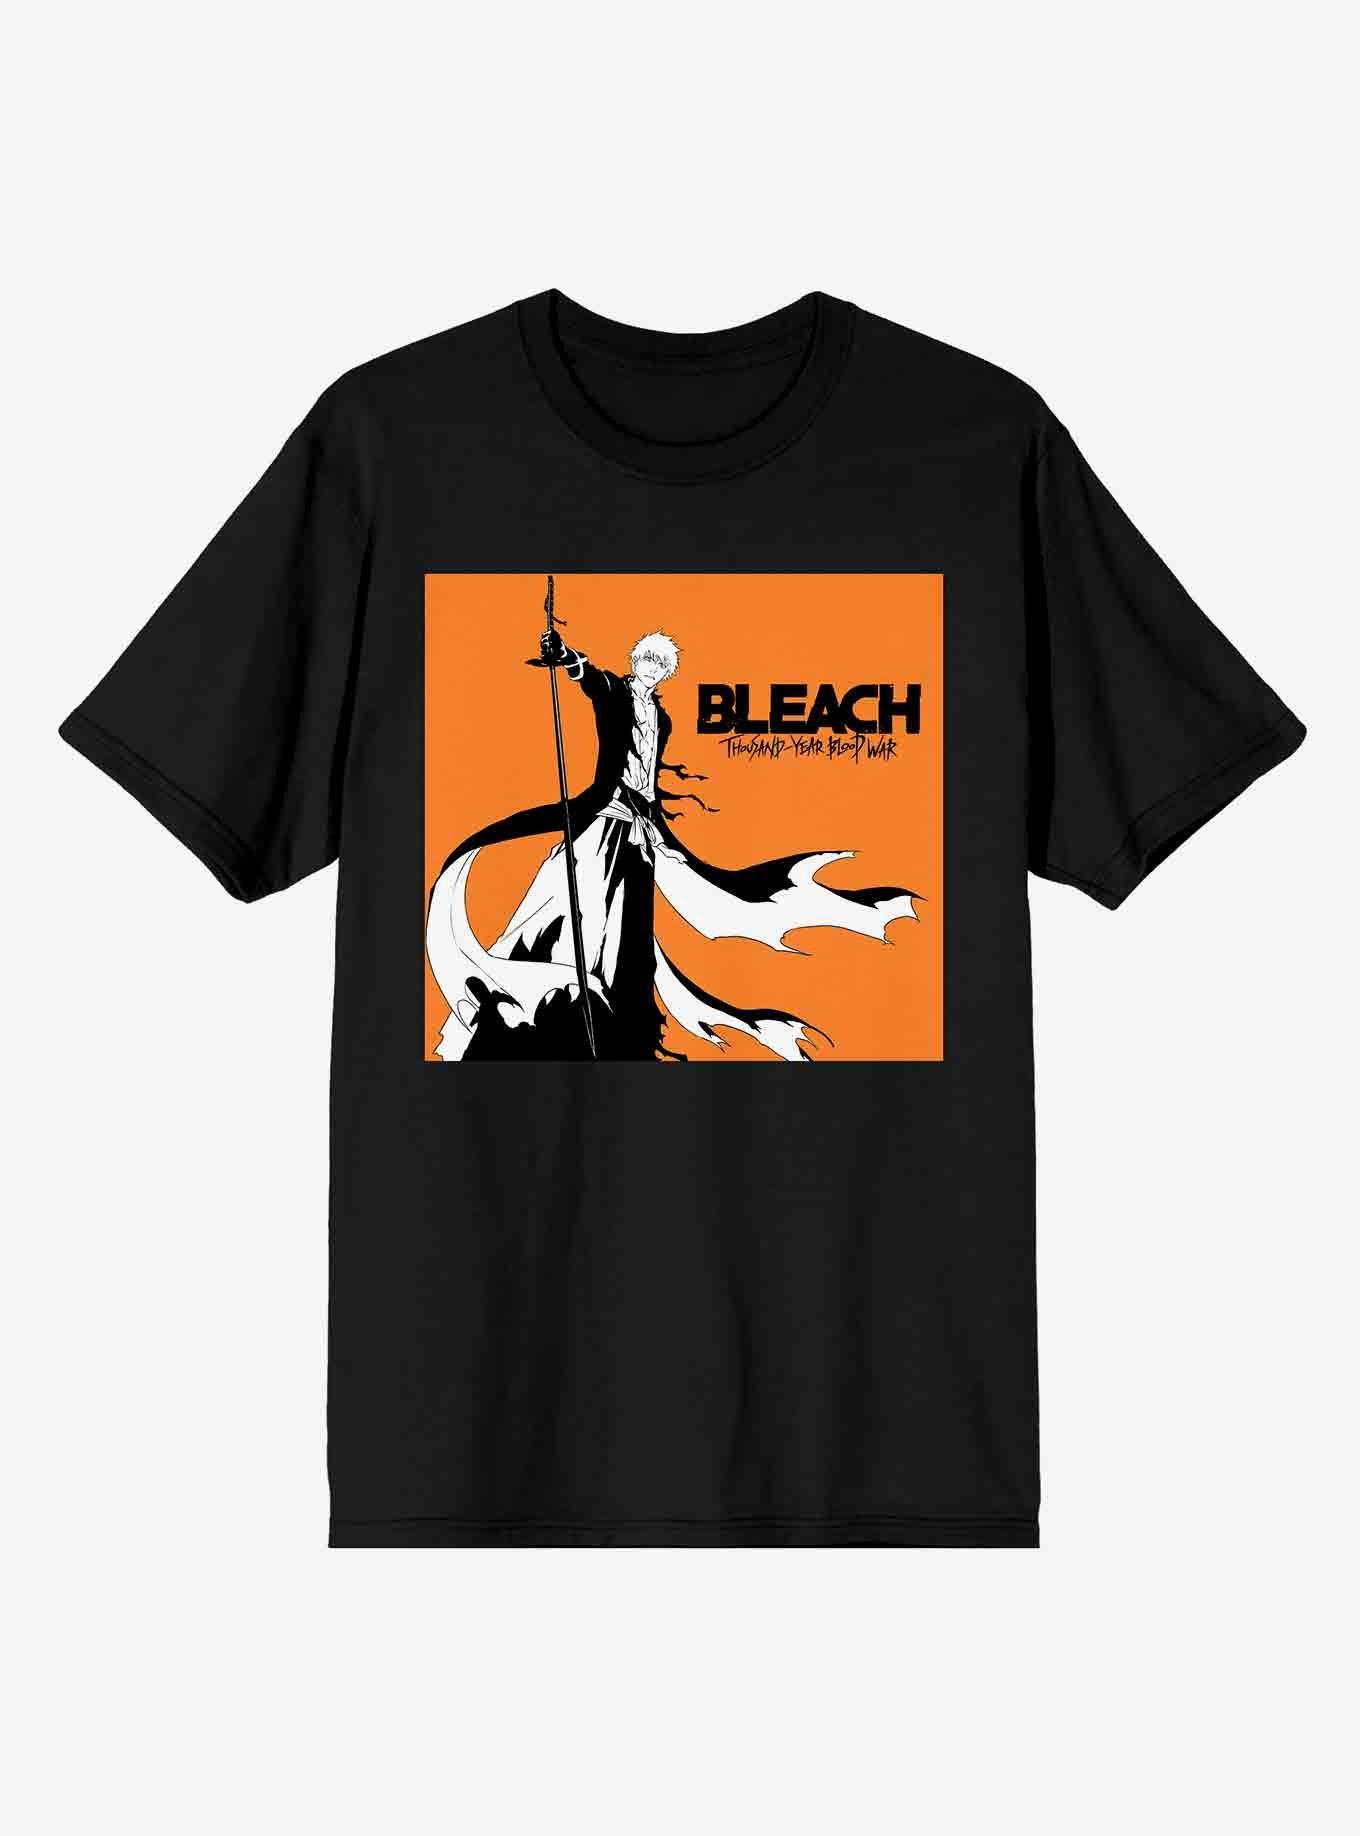 Nirvana Bleach T-Shirt  Bleach t shirts, T shirt, Mens tshirts